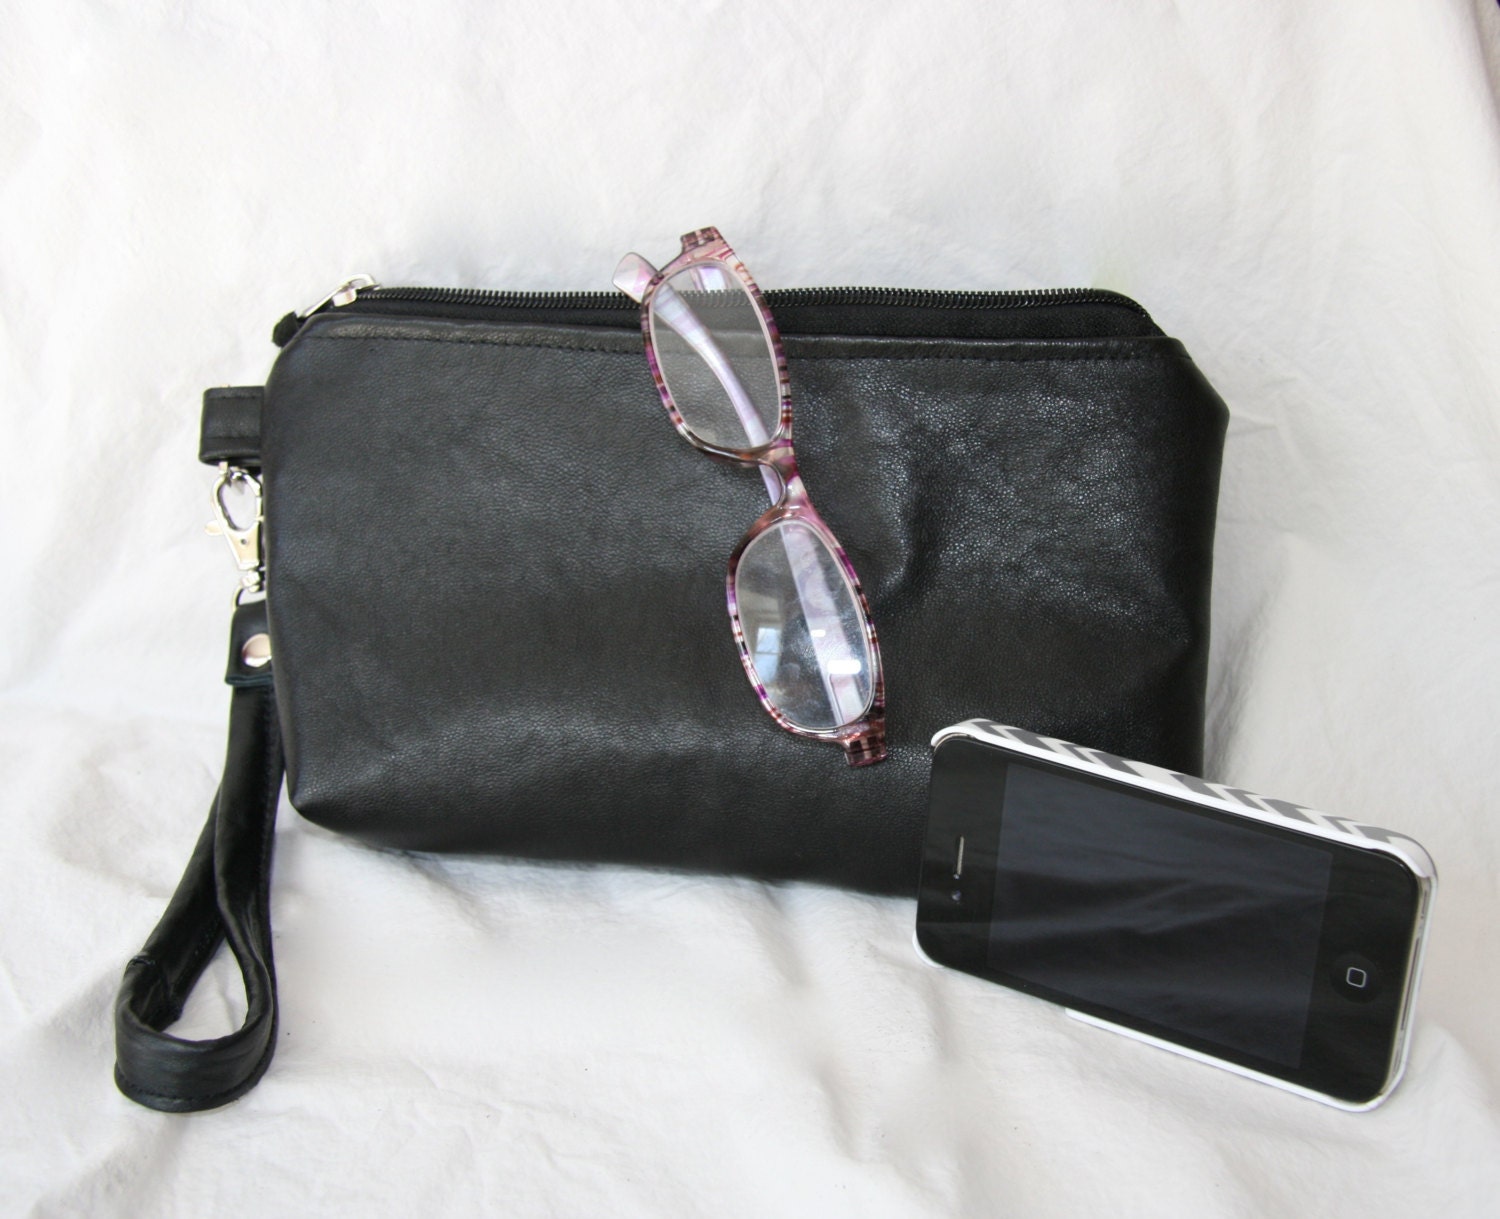 Leather wristlet make-up bag clutch purse black large